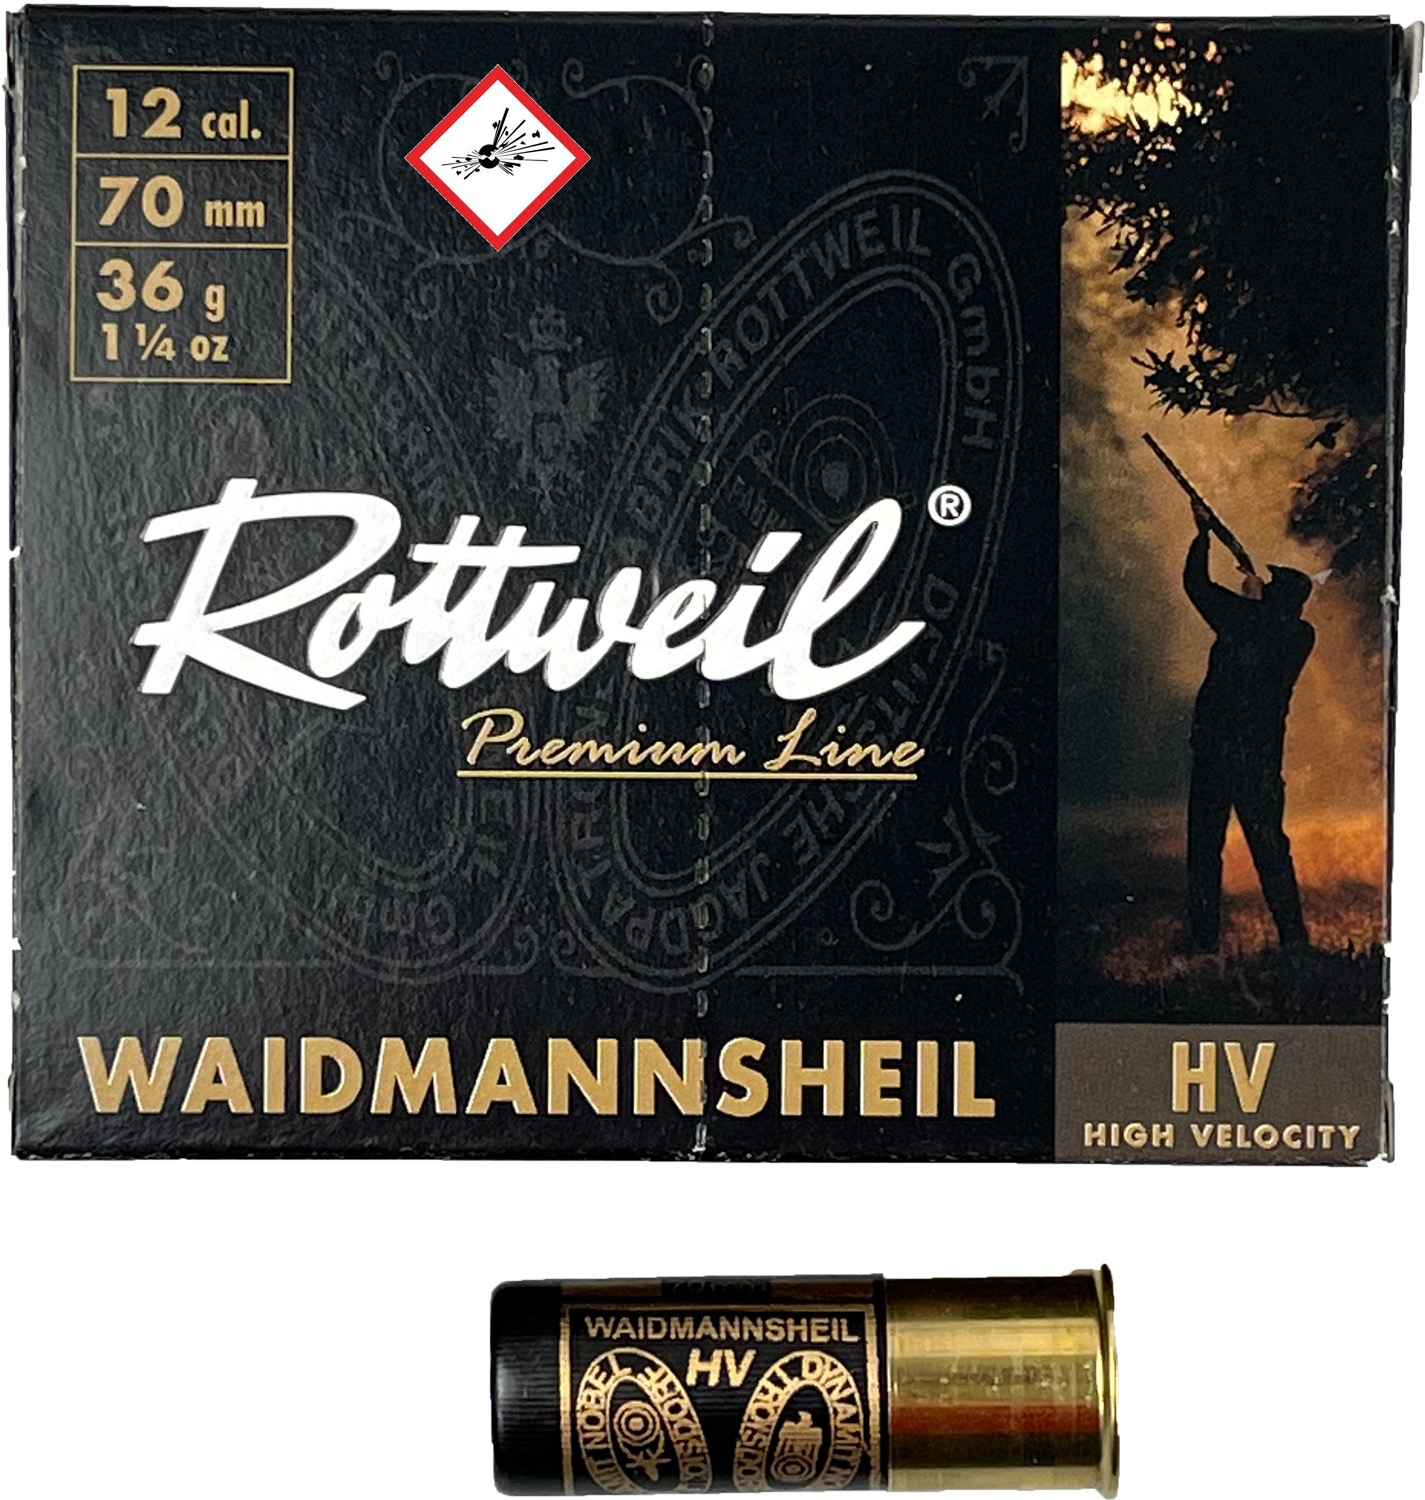 204004_rottweil-waidmannsheil-hv-plastik-12-70